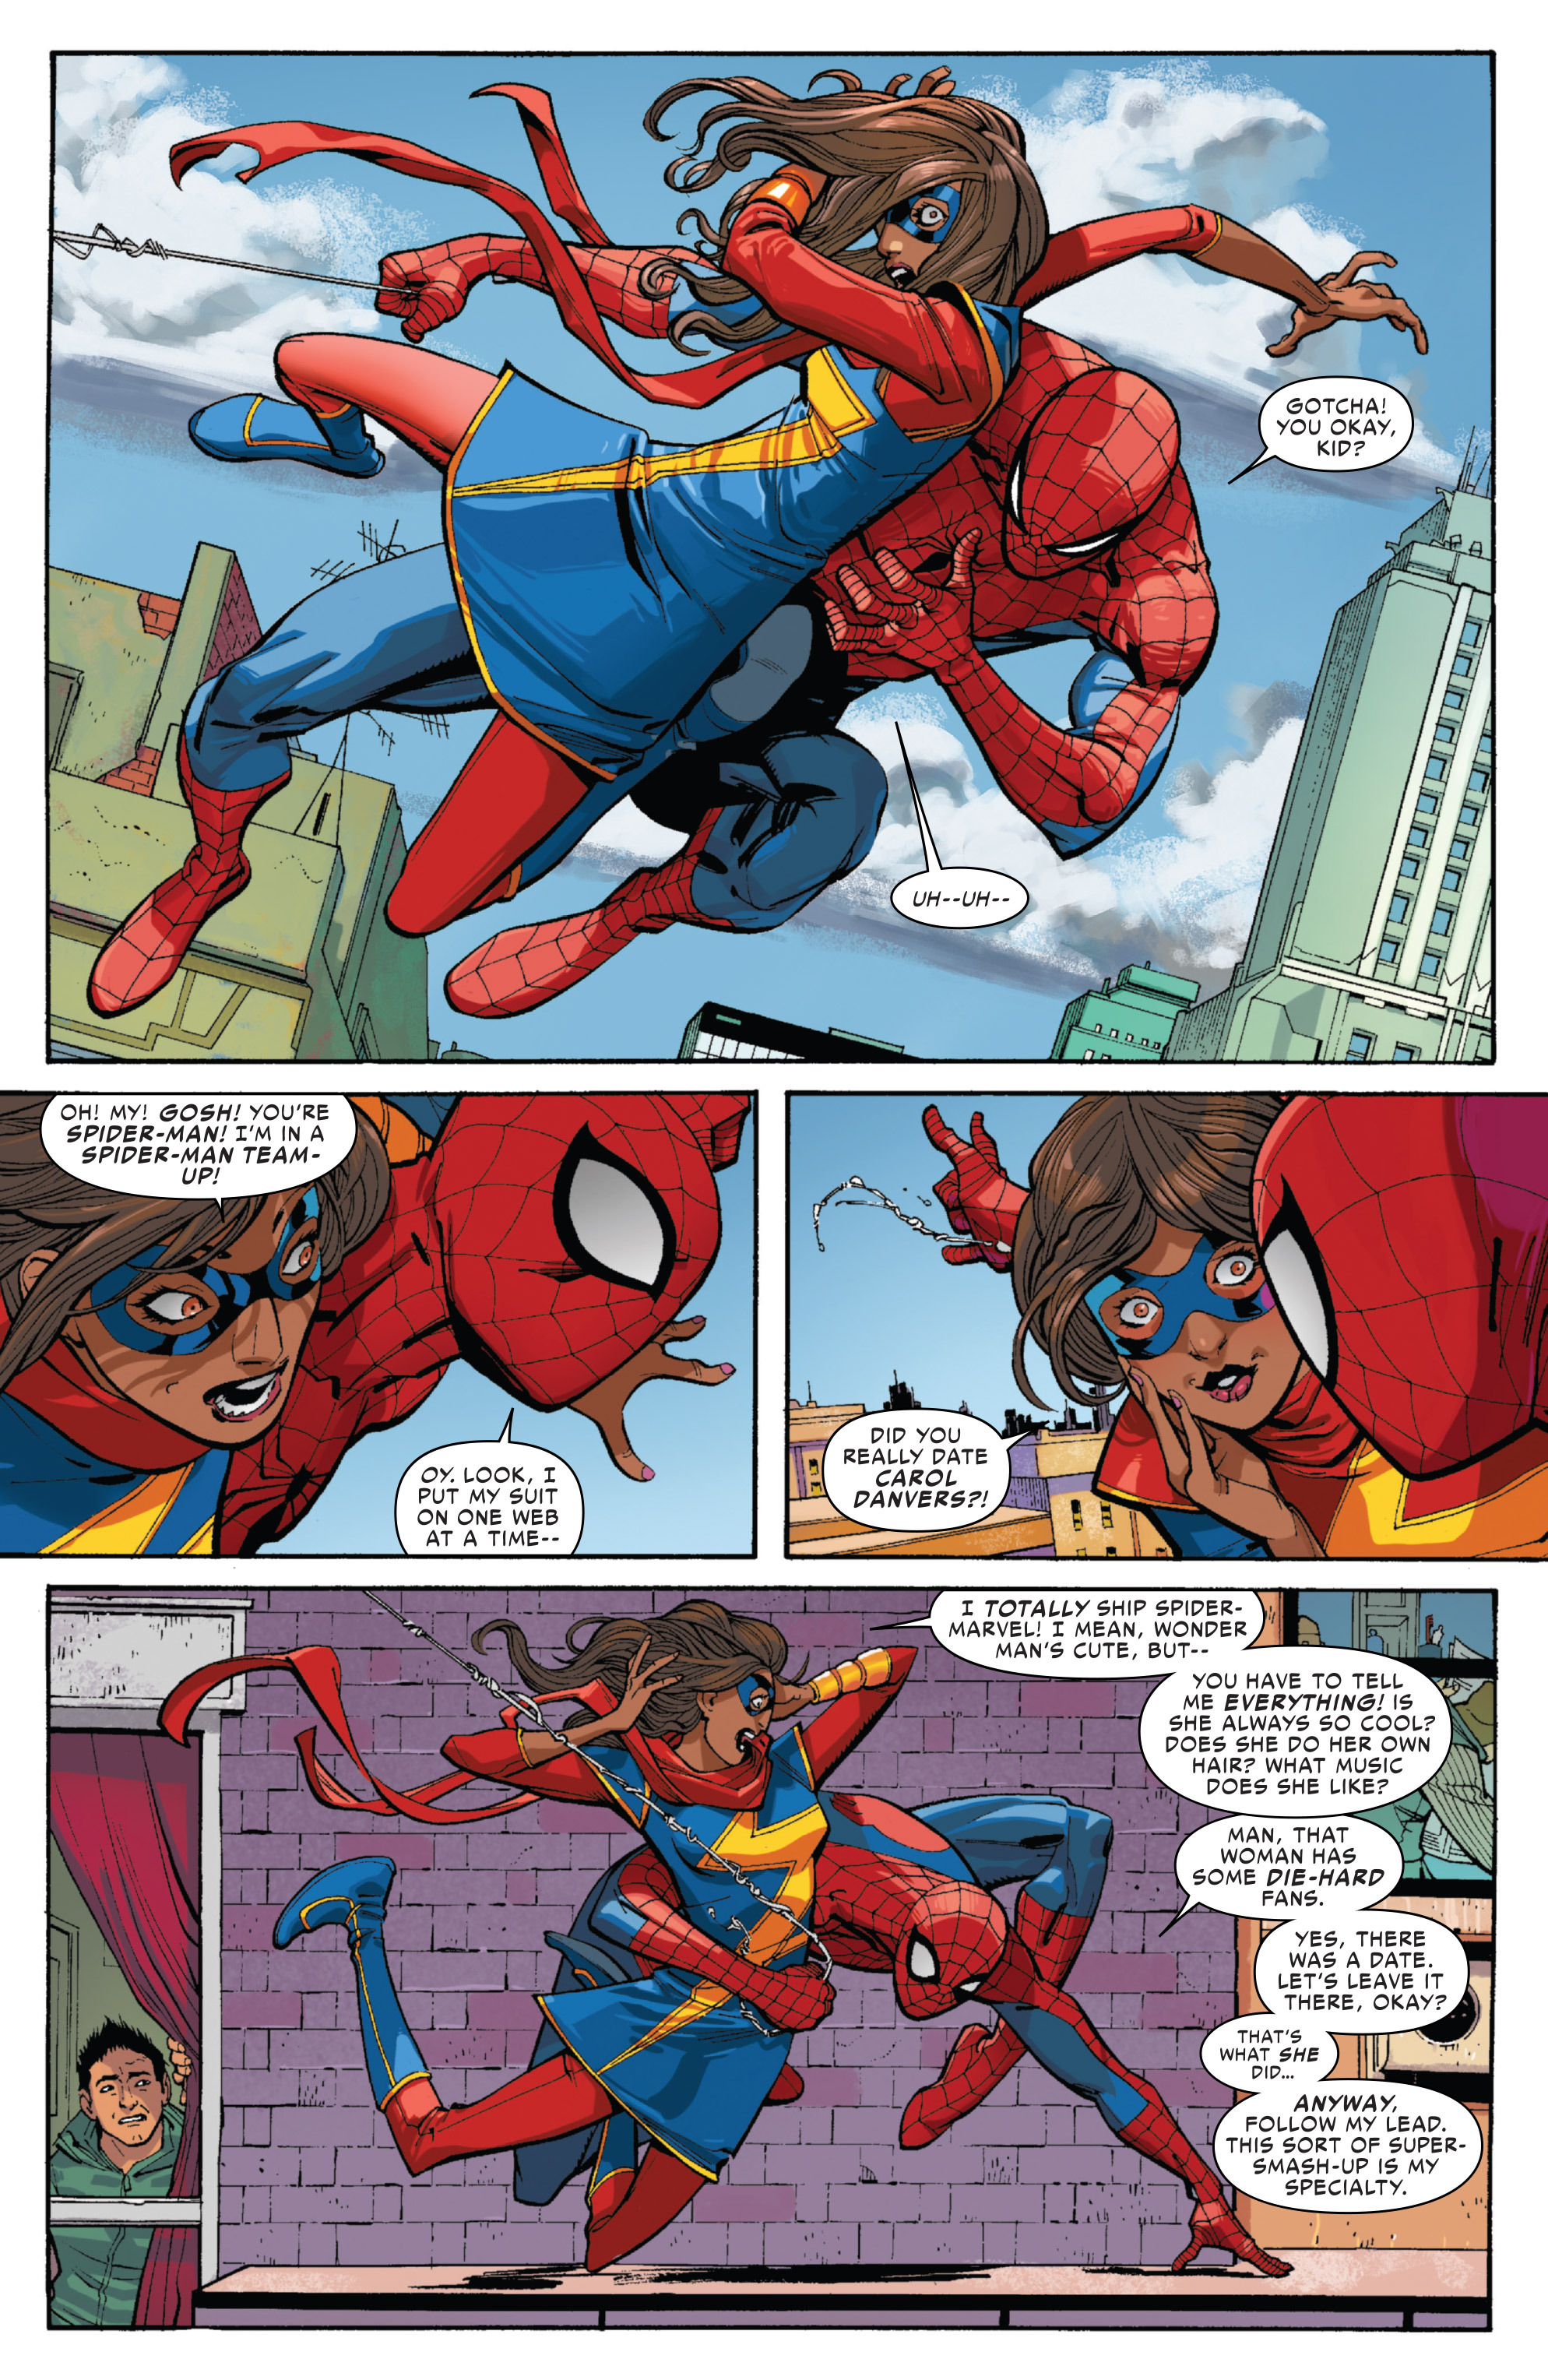 Amazing Spider Man 2014 7 Review Stillanerd’s Take